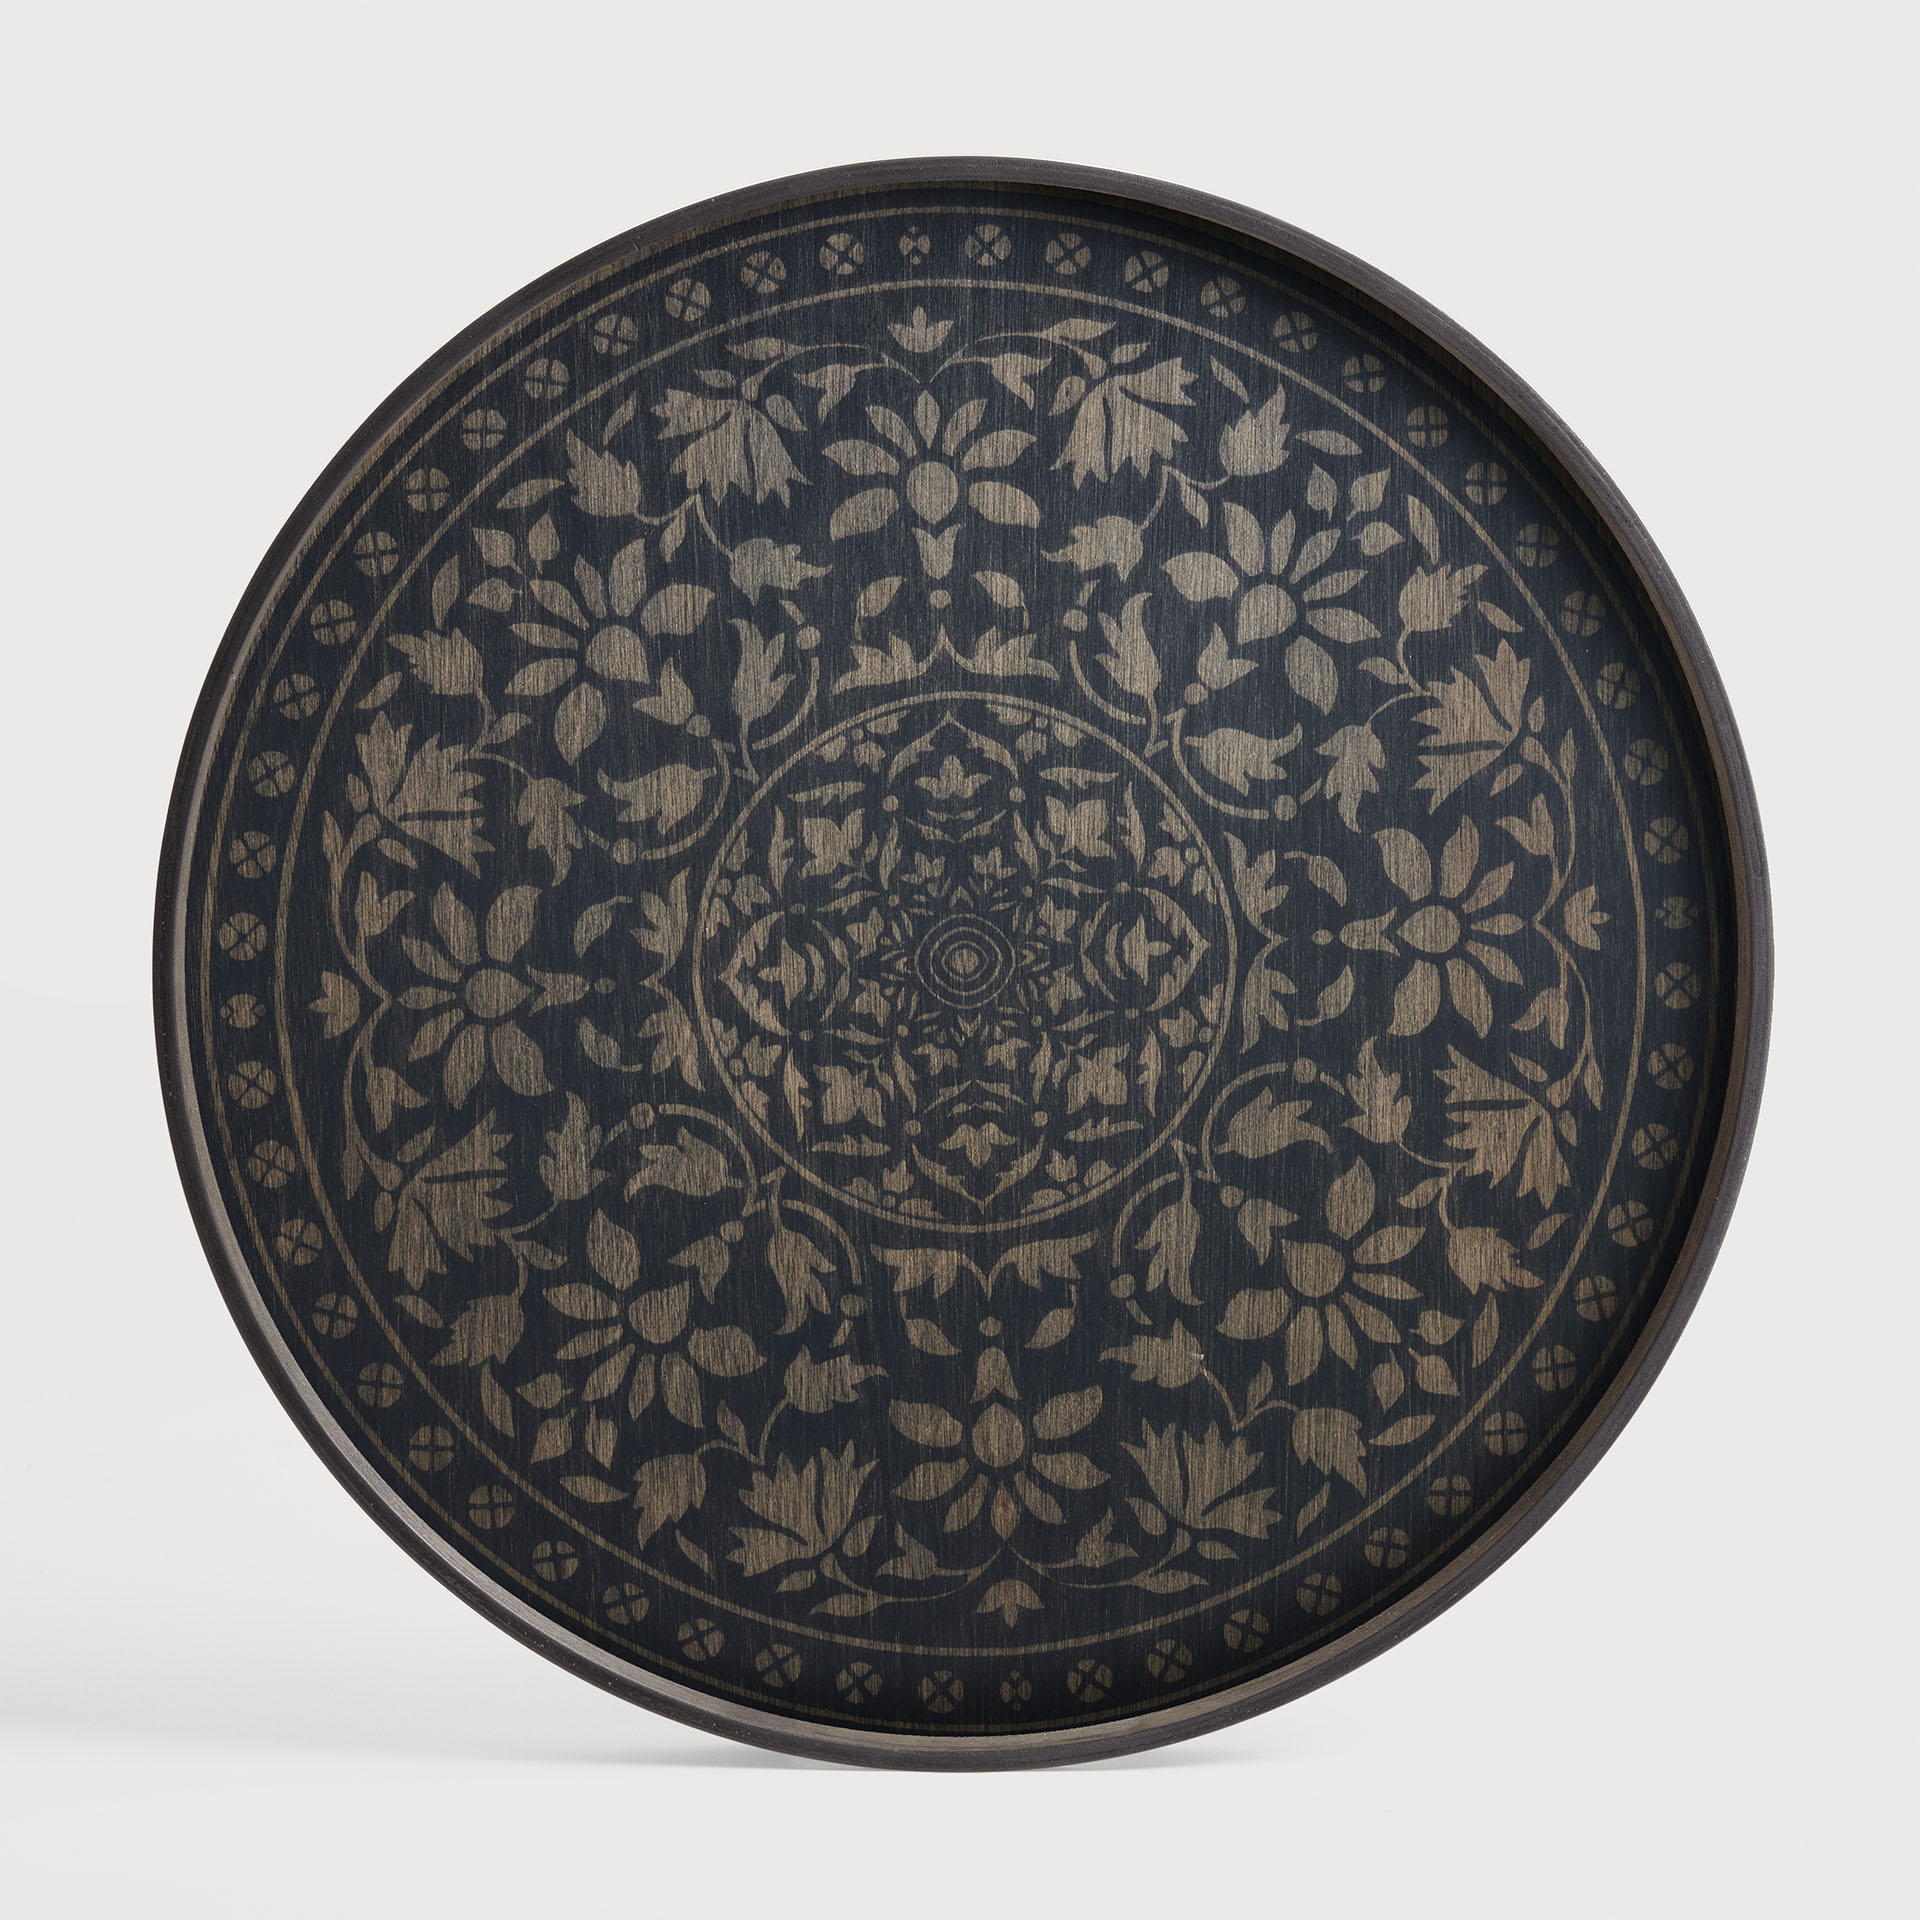 [20436*] Black Marrakesh wooden tray - round - L